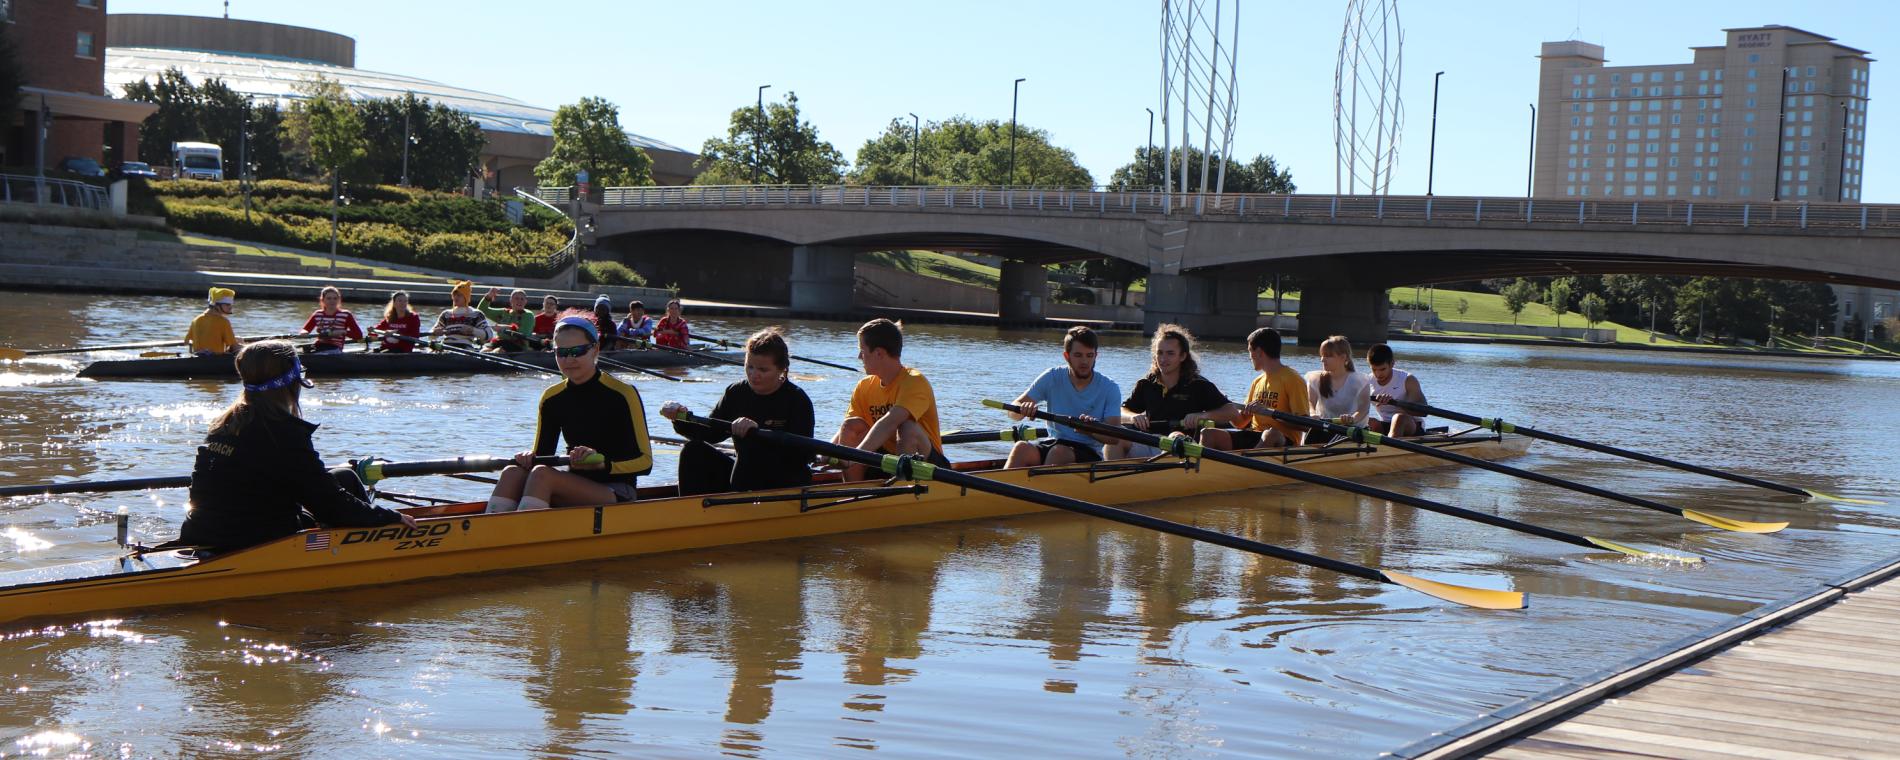 Boats/Bikes rowing Visit Wichita